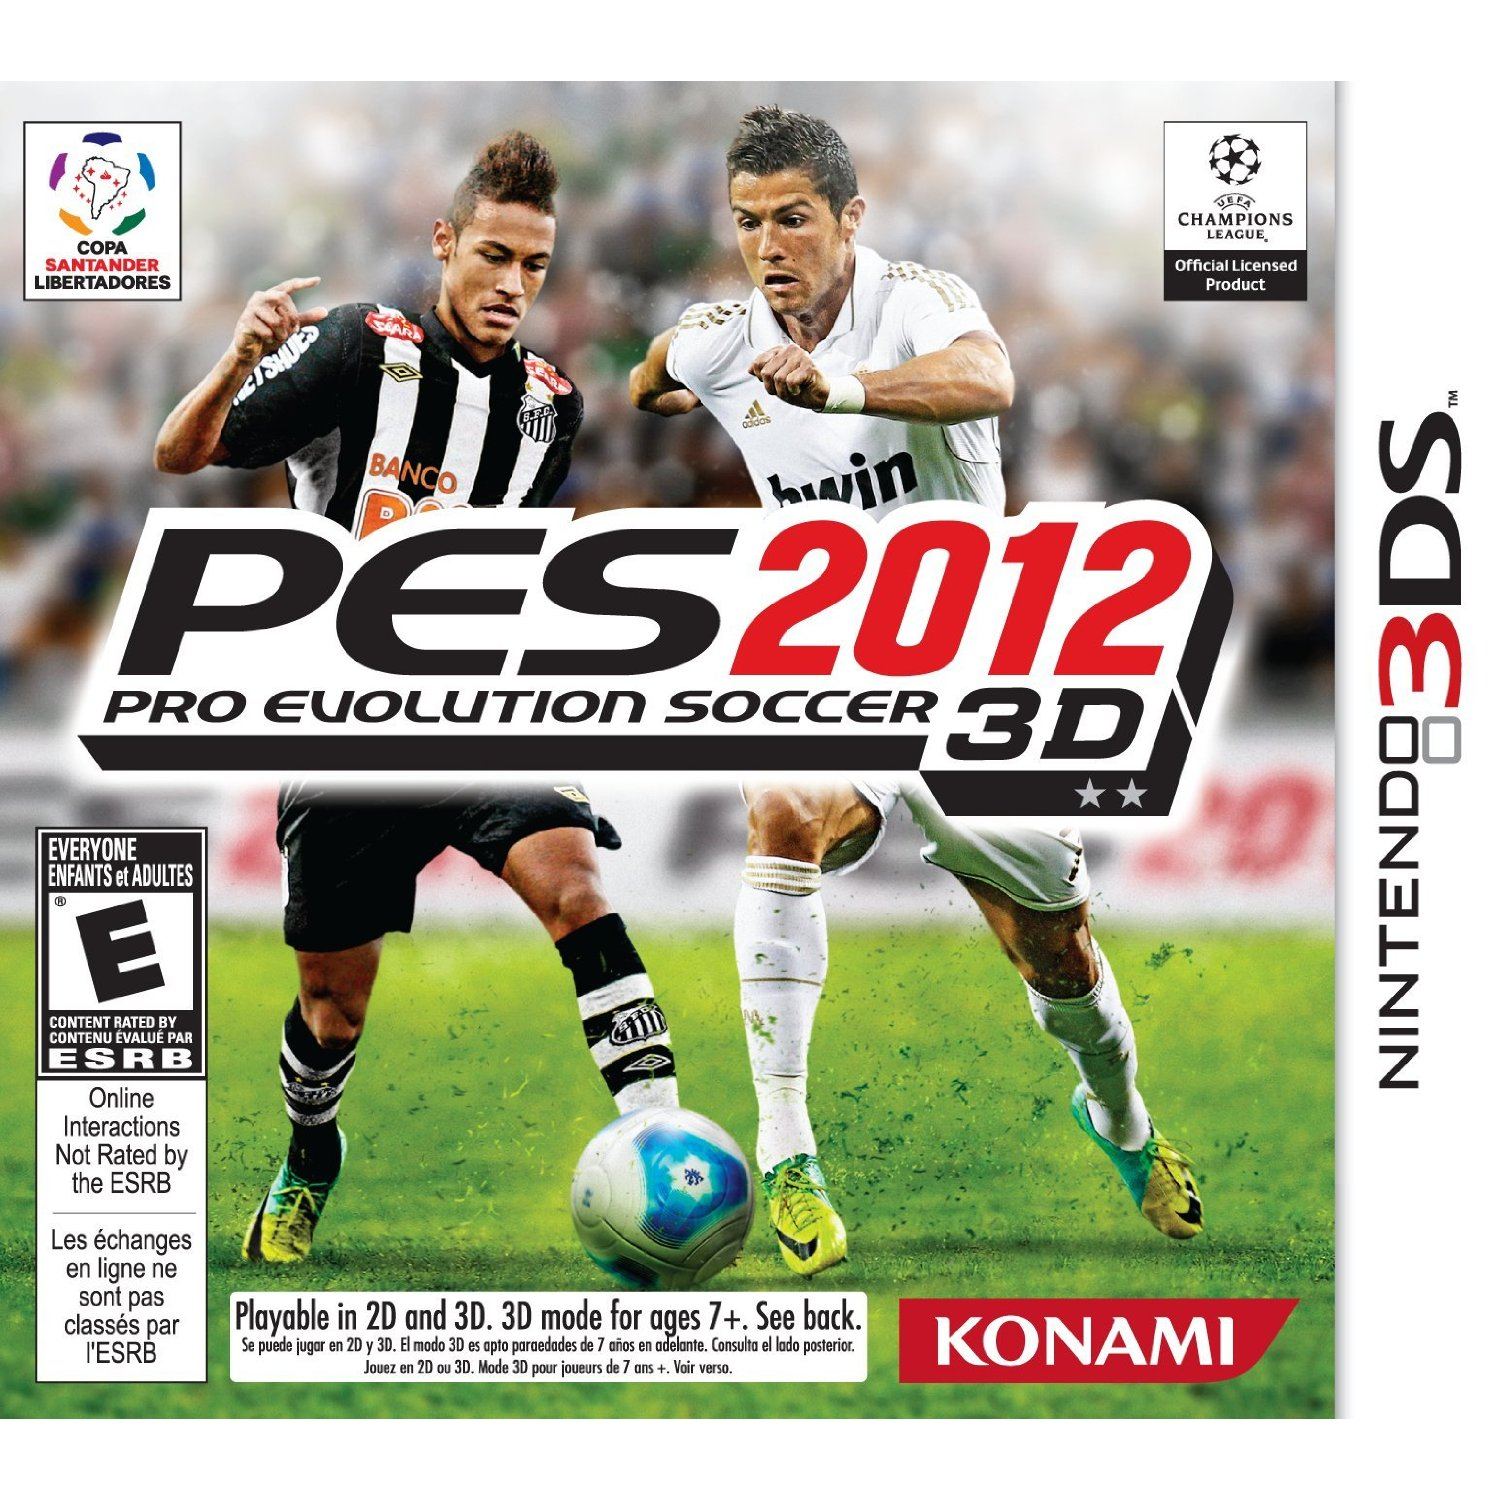 Hasil gambar untuk Pro Evolution Soccer 2012